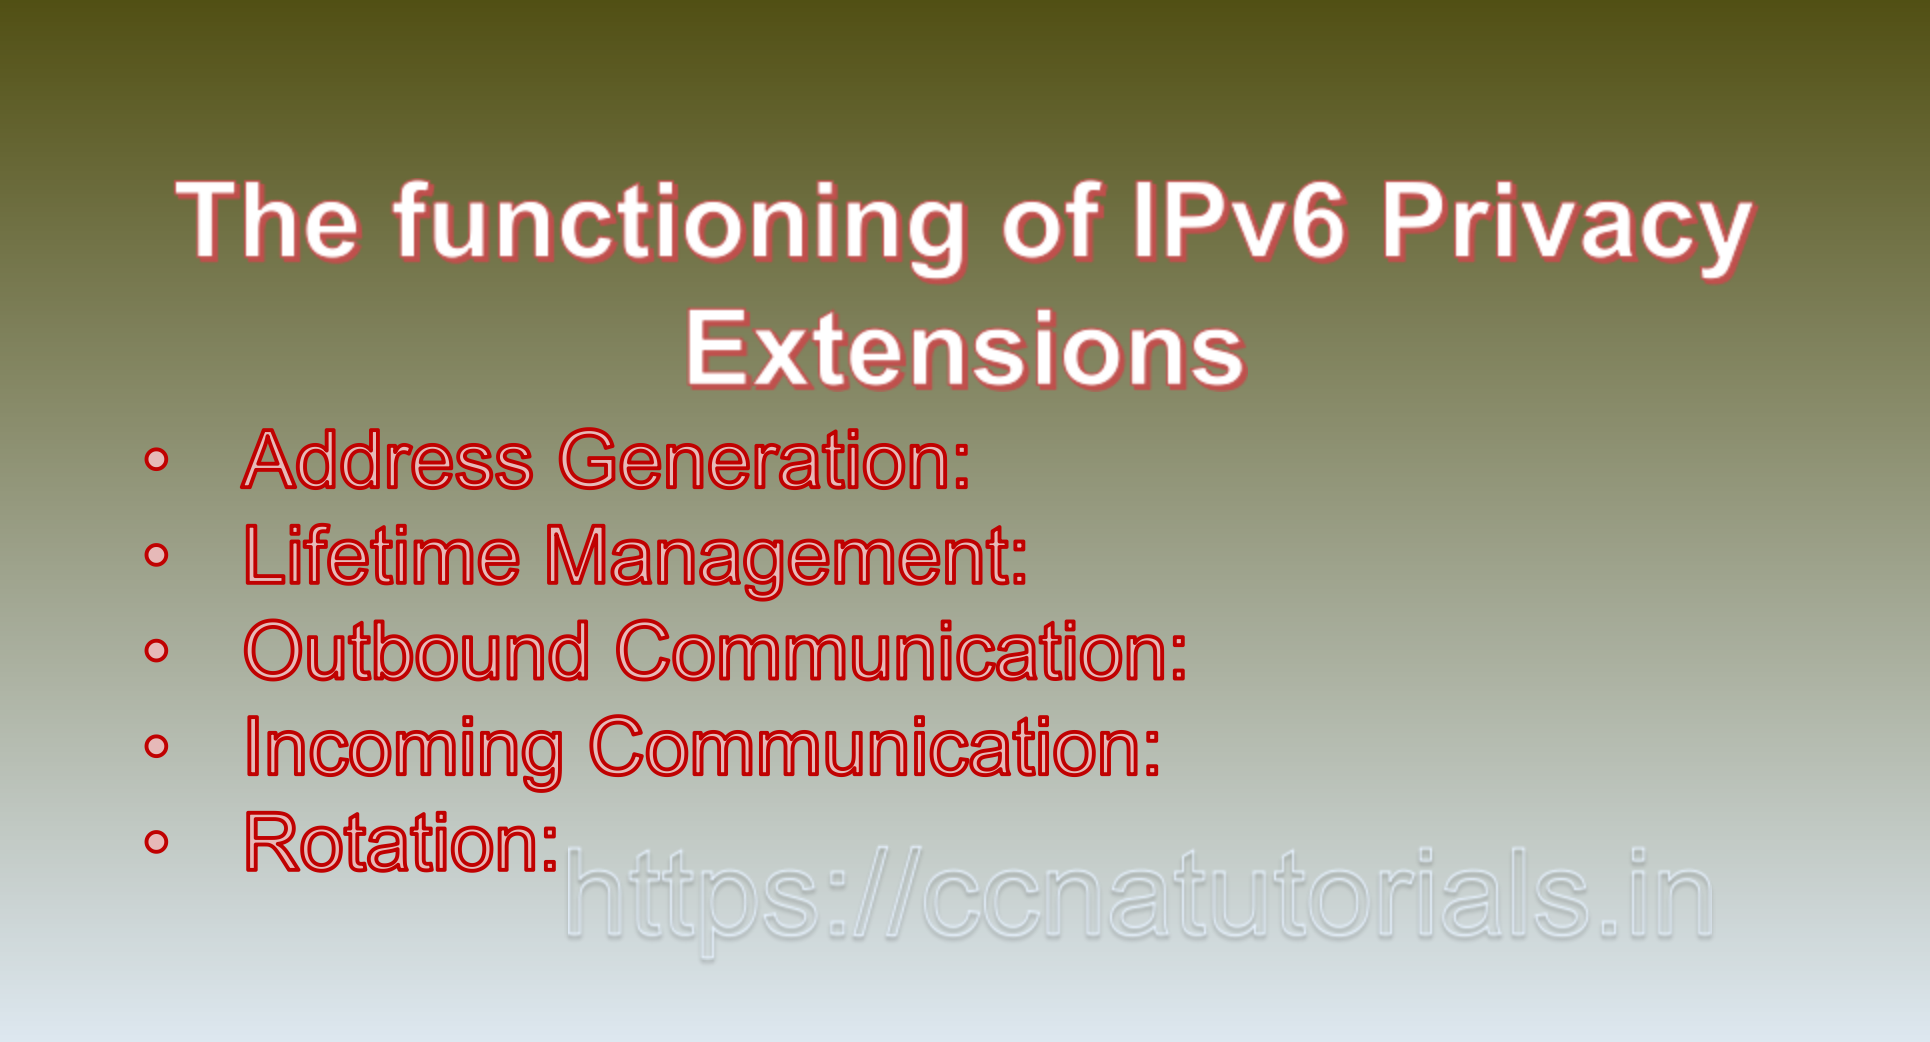 IPv6 Privacy Extensions, ccna, ccna tutorials